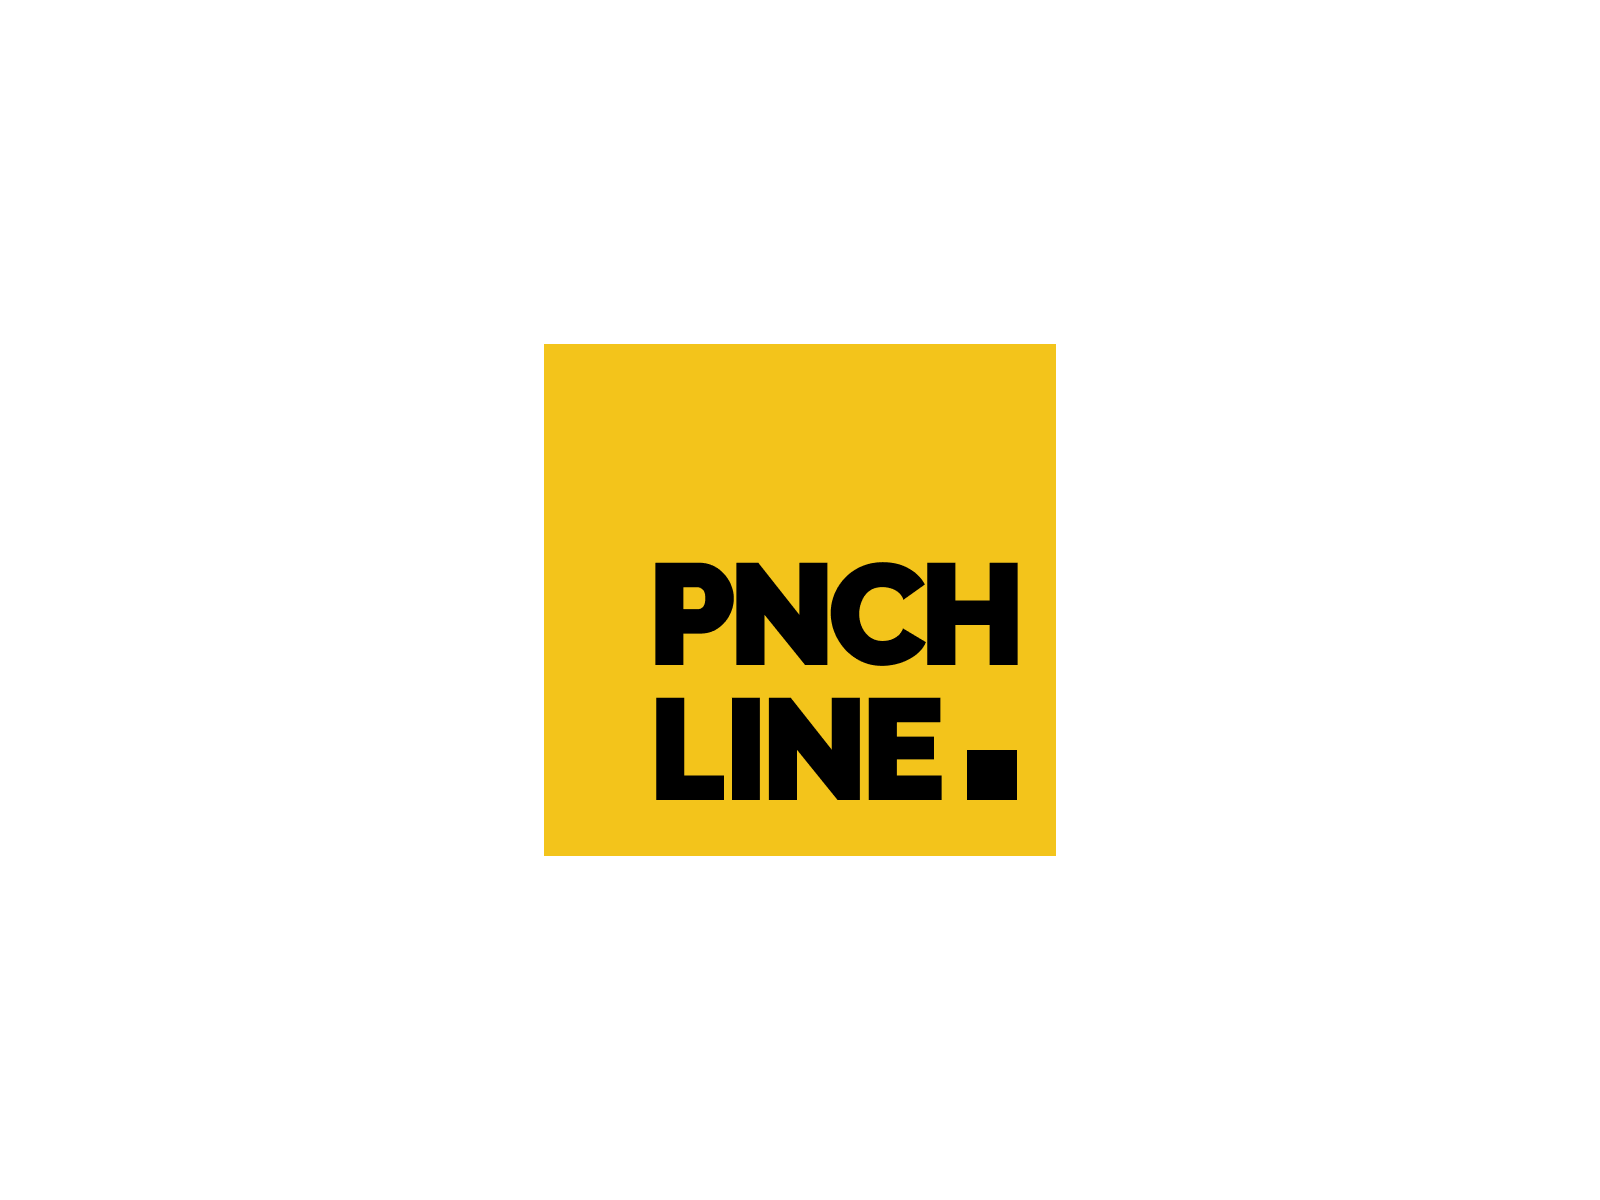 PNCHLINE ▪︎ Loading animation animation brutalist logo minimalist preloader punchline